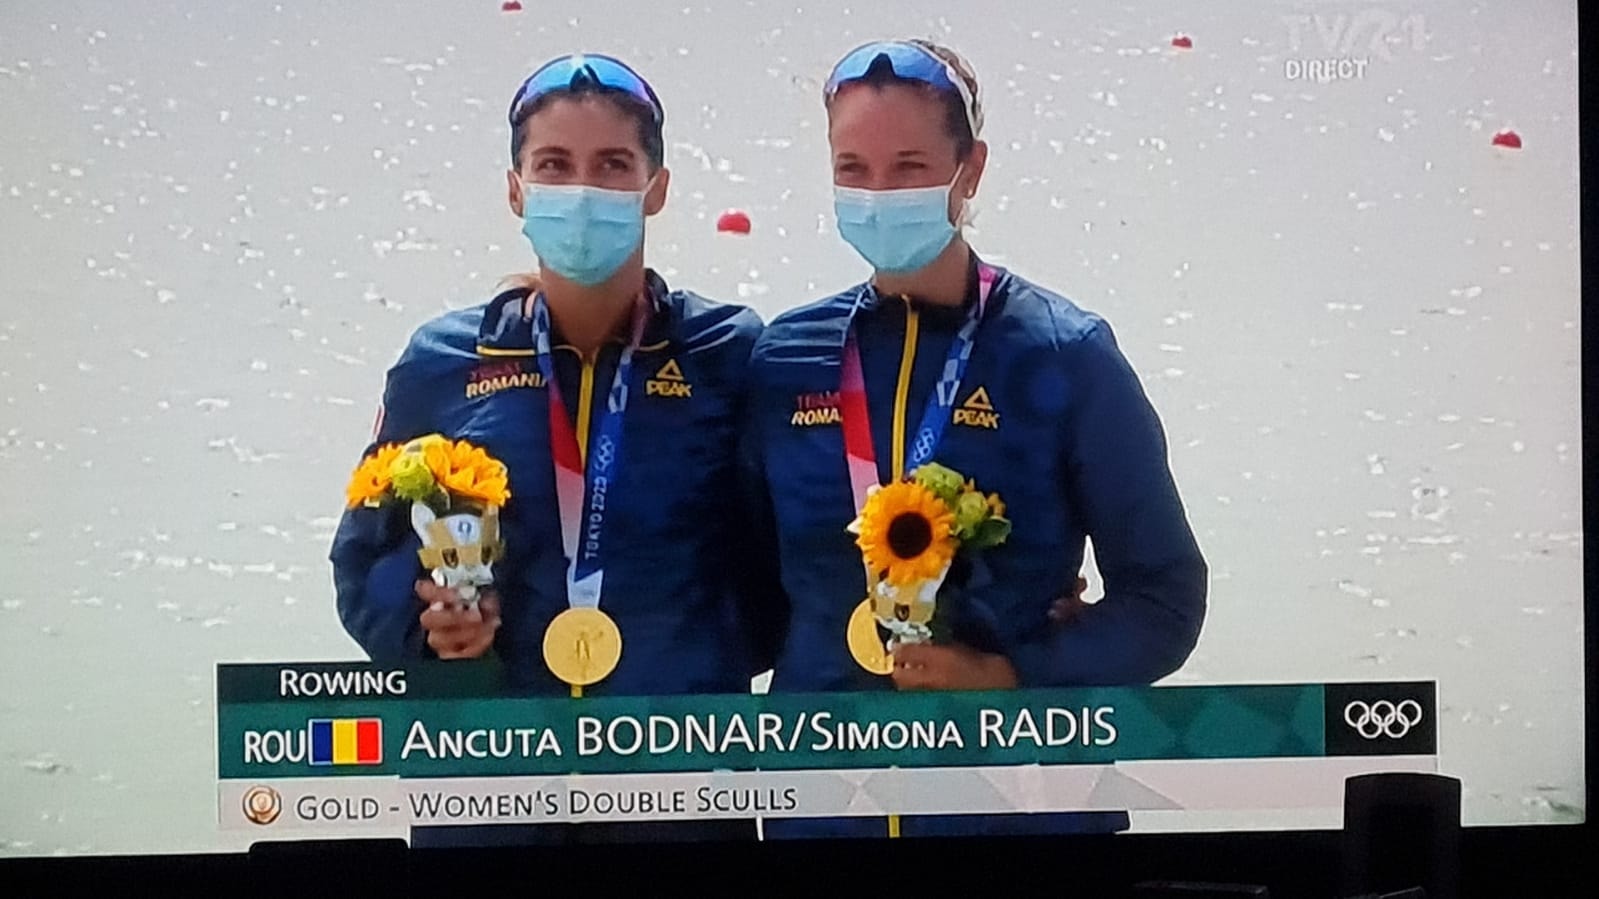 Prima medalie de aur cucerita de Romania la Jocurile Olimpice de la Tokyo 2020 vine din canotaj